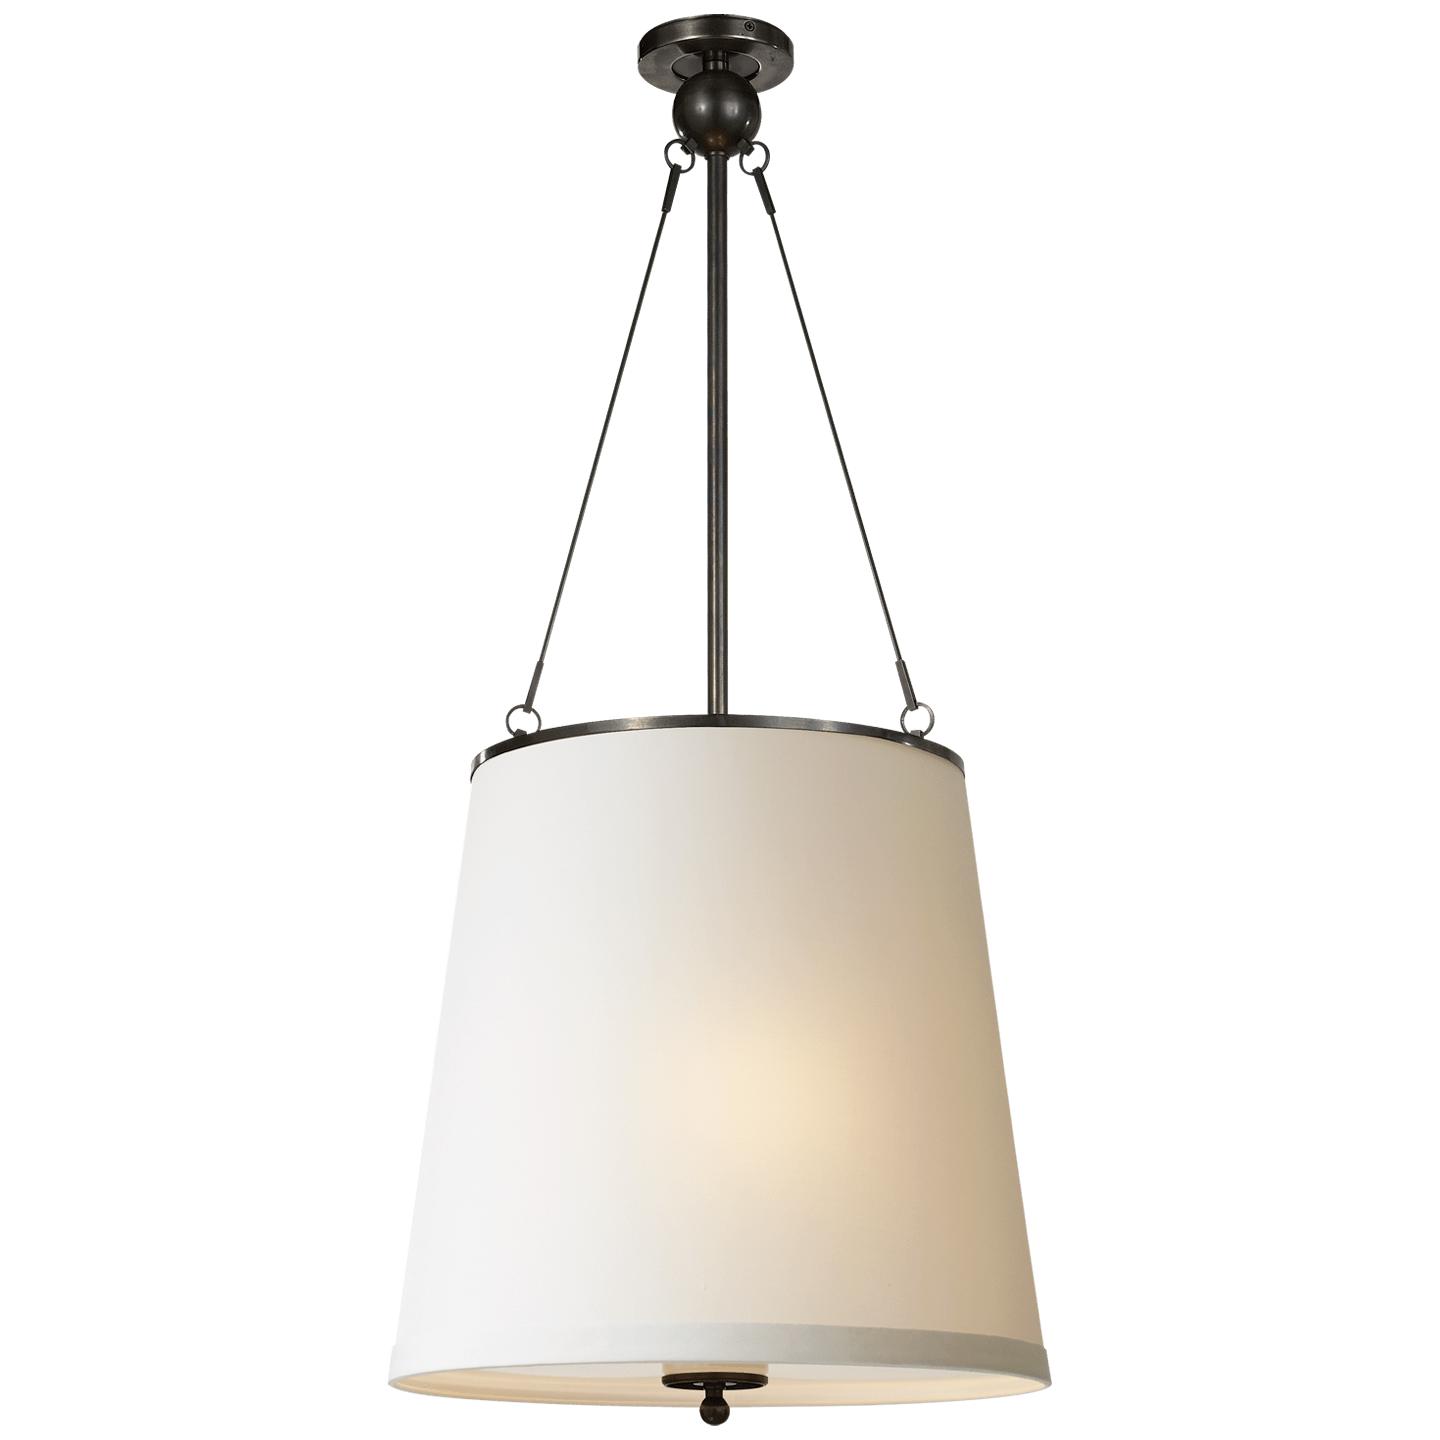 Купить Подвесной светильник Westport Hanging Shade в интернет-магазине roooms.ru